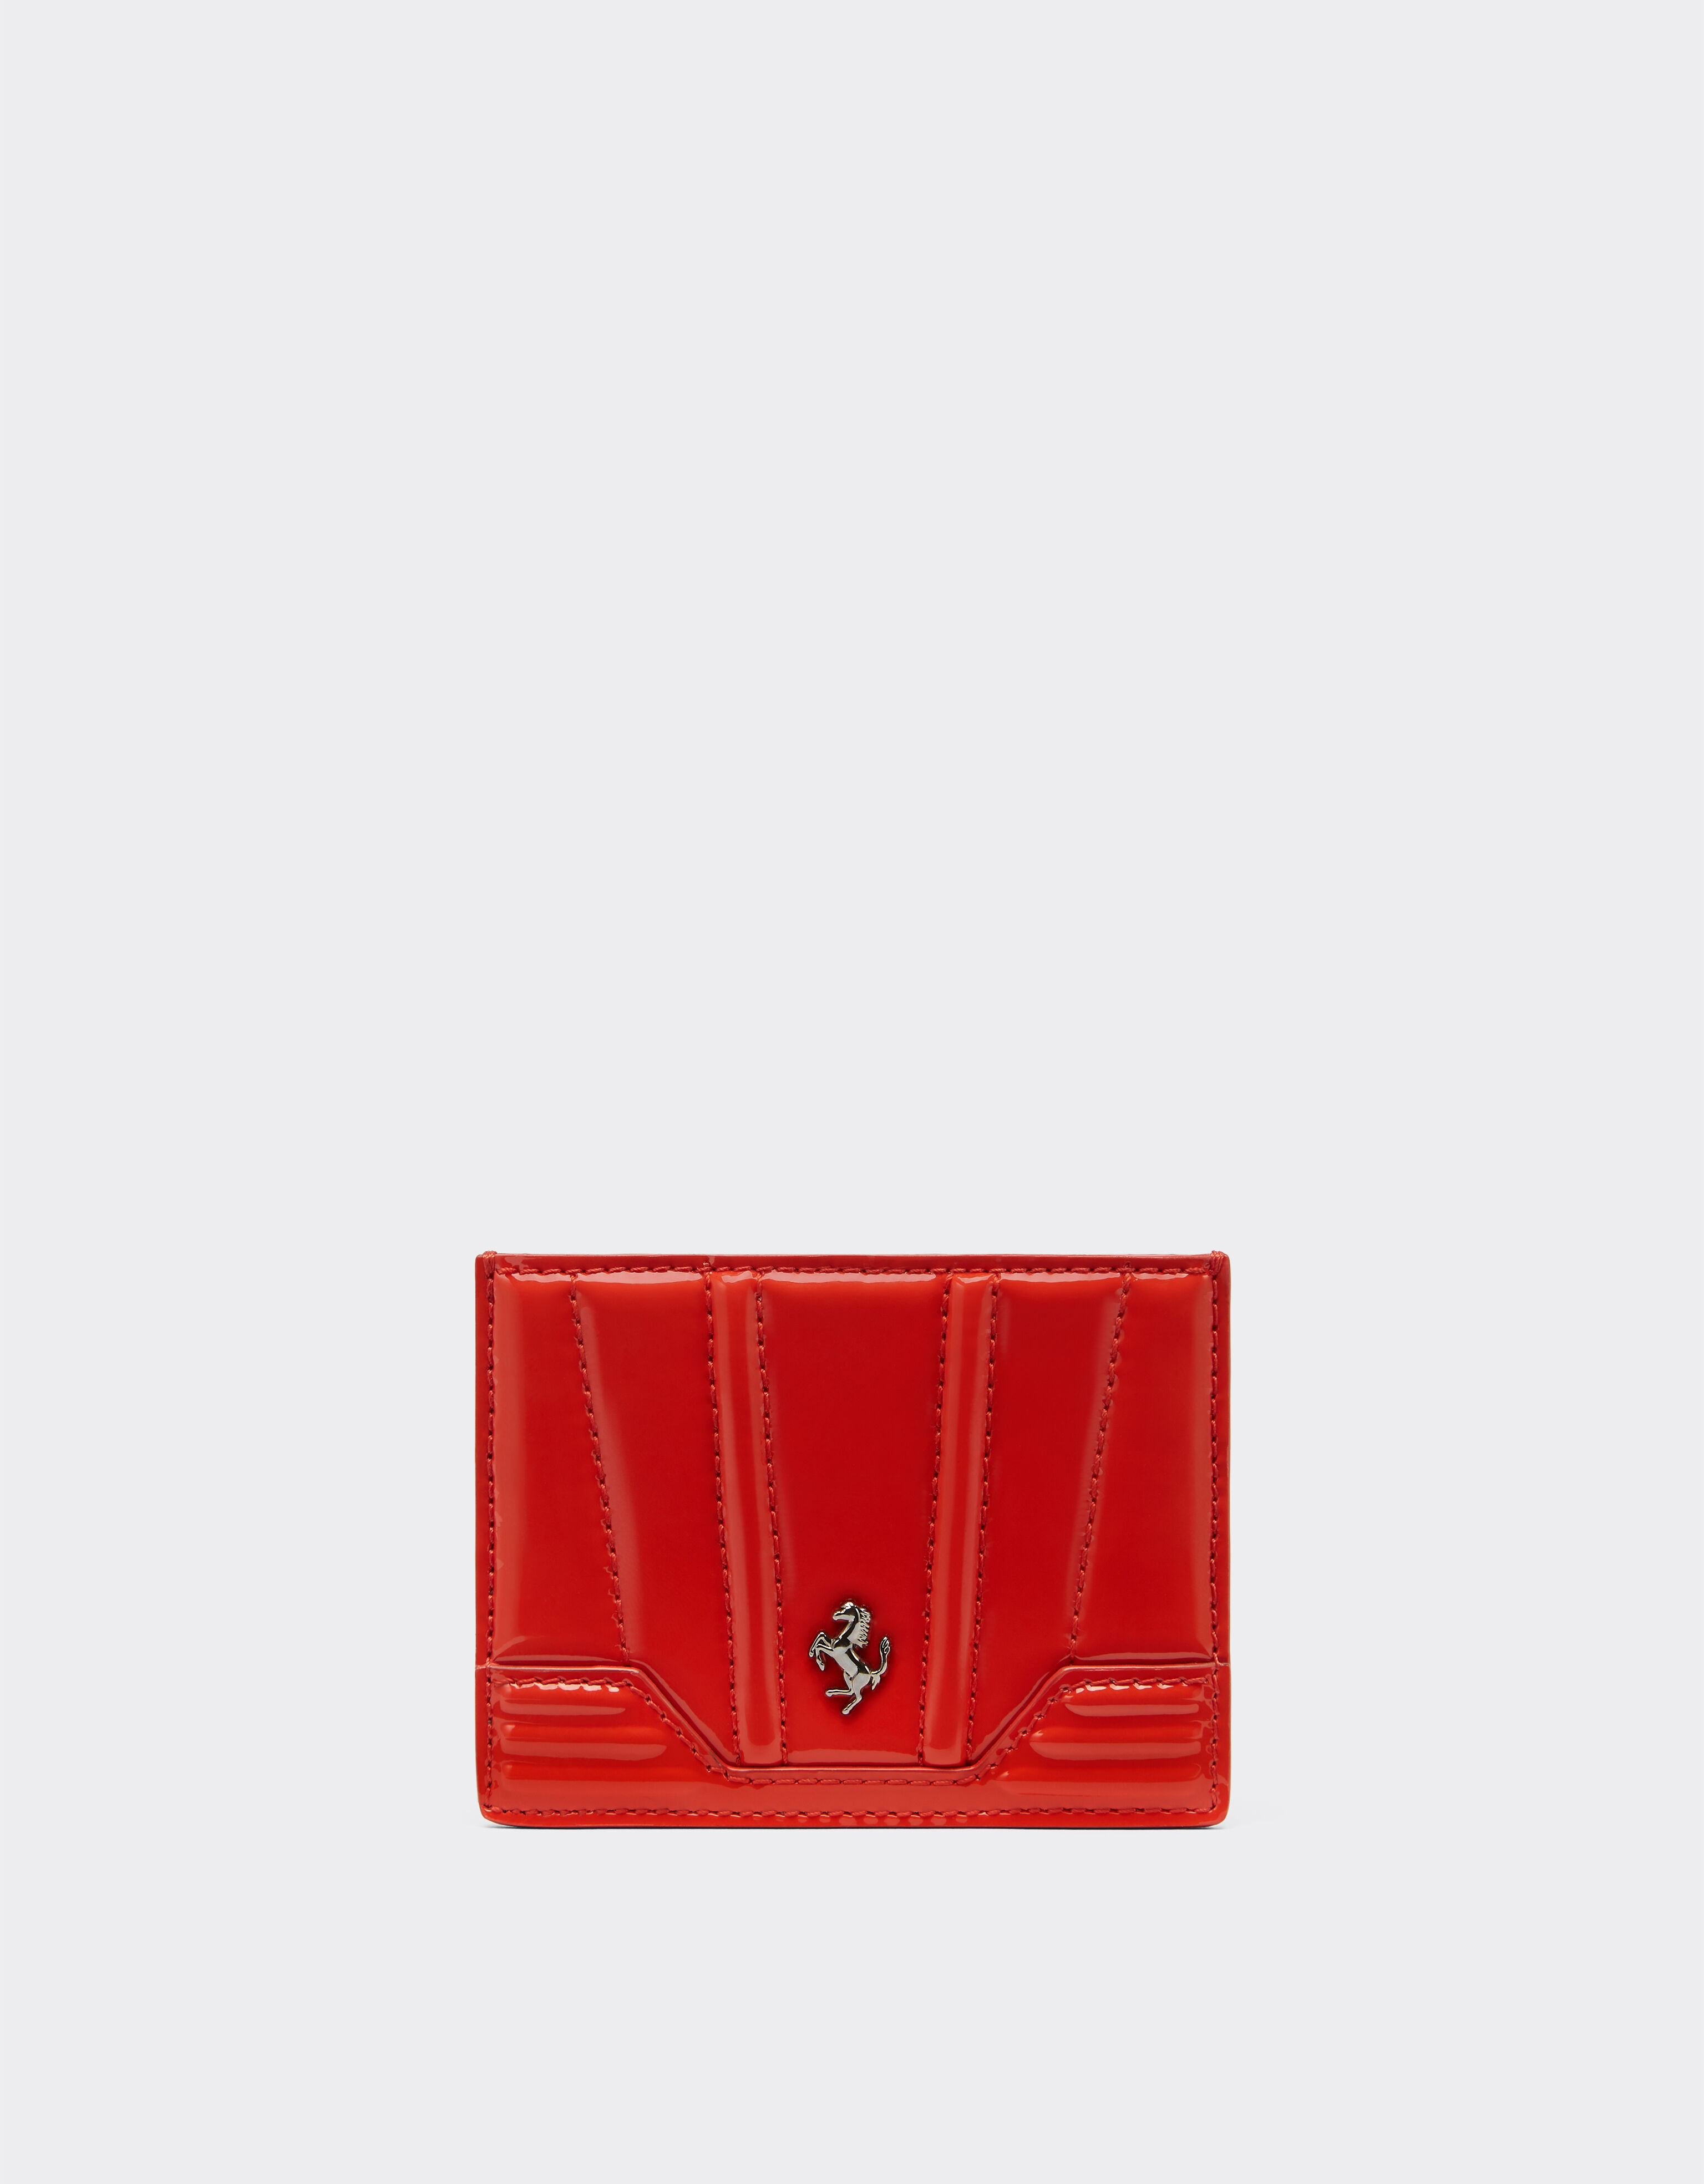 Ferrari Card holder in patent leather Rosso Dino 20243f